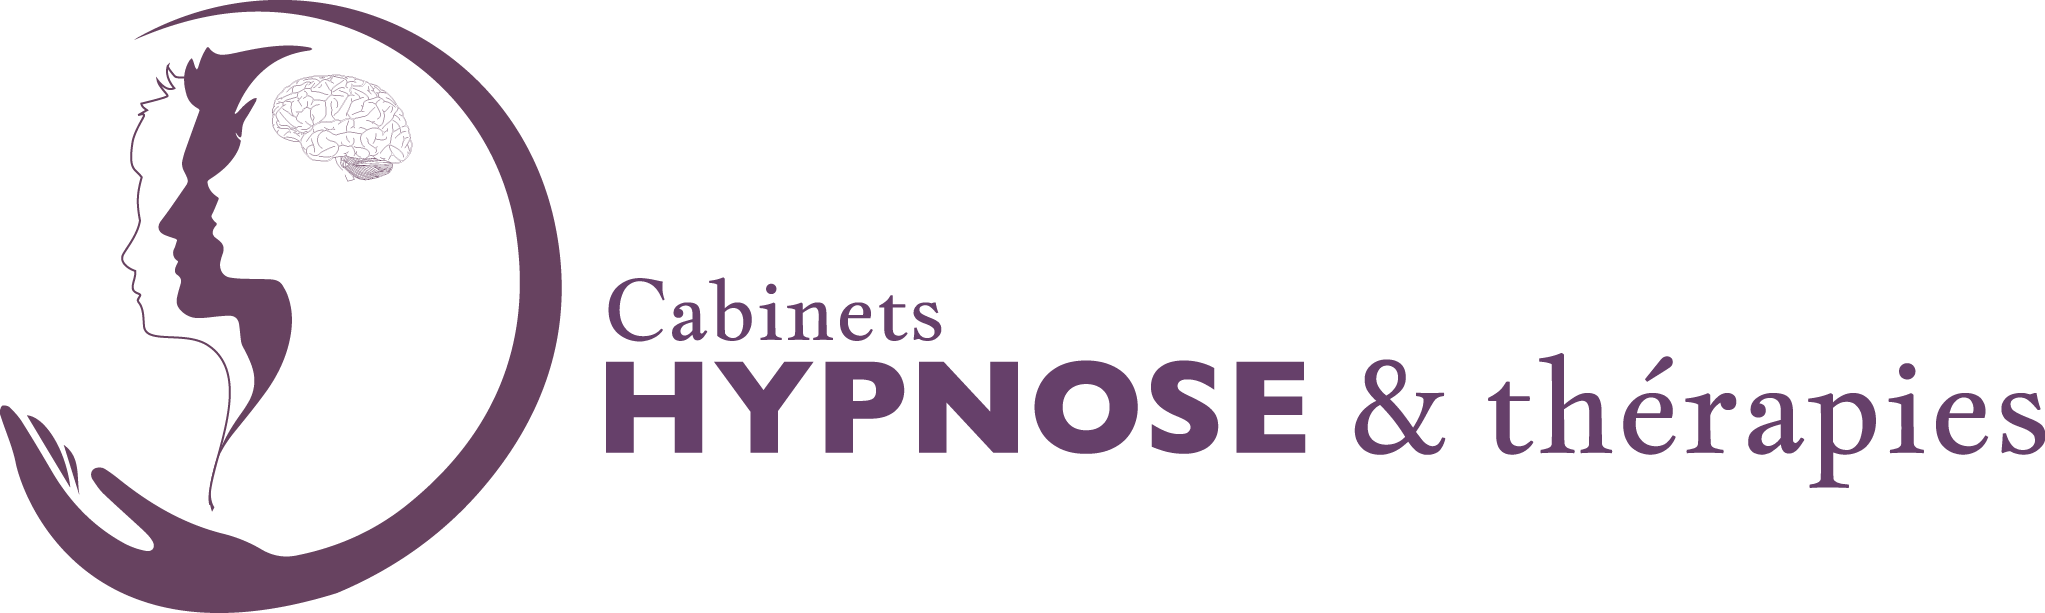 logo du cabinet d'hypnose Améthyste, nom en mauve avec un arbre stylisé